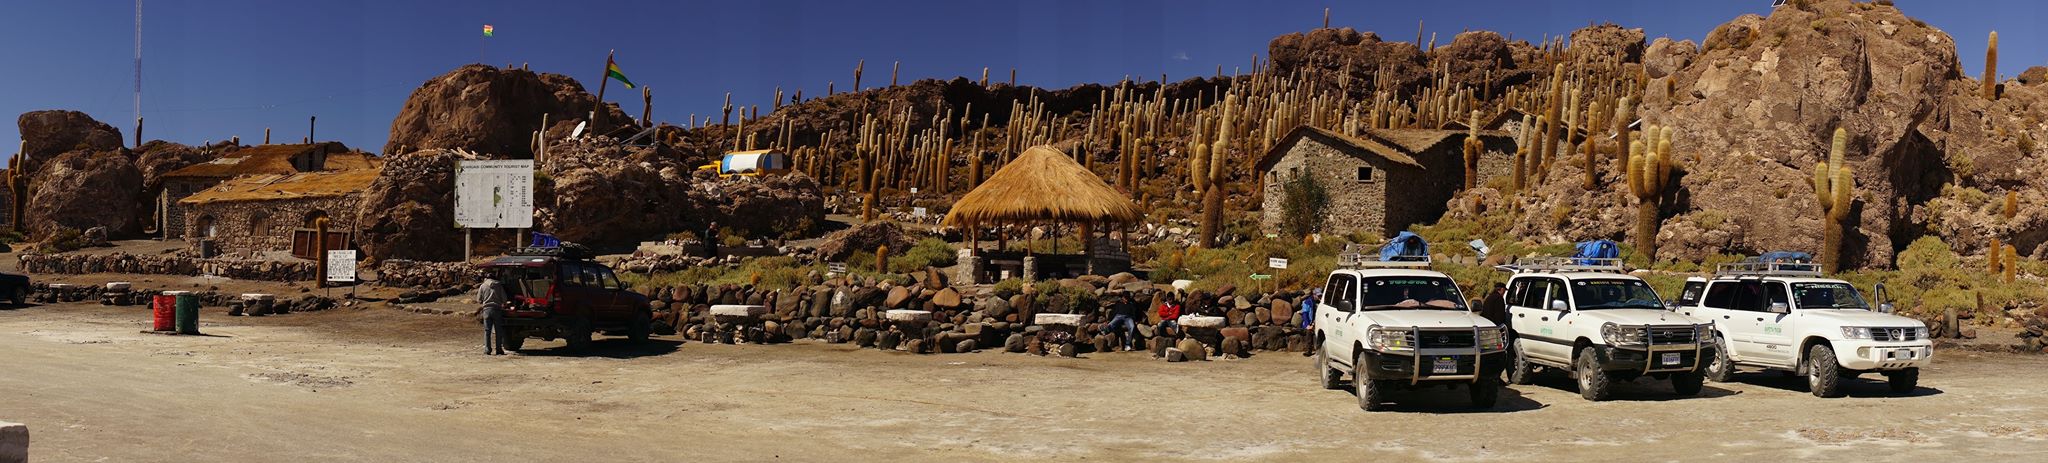 Insel in der Salar de Uyuni